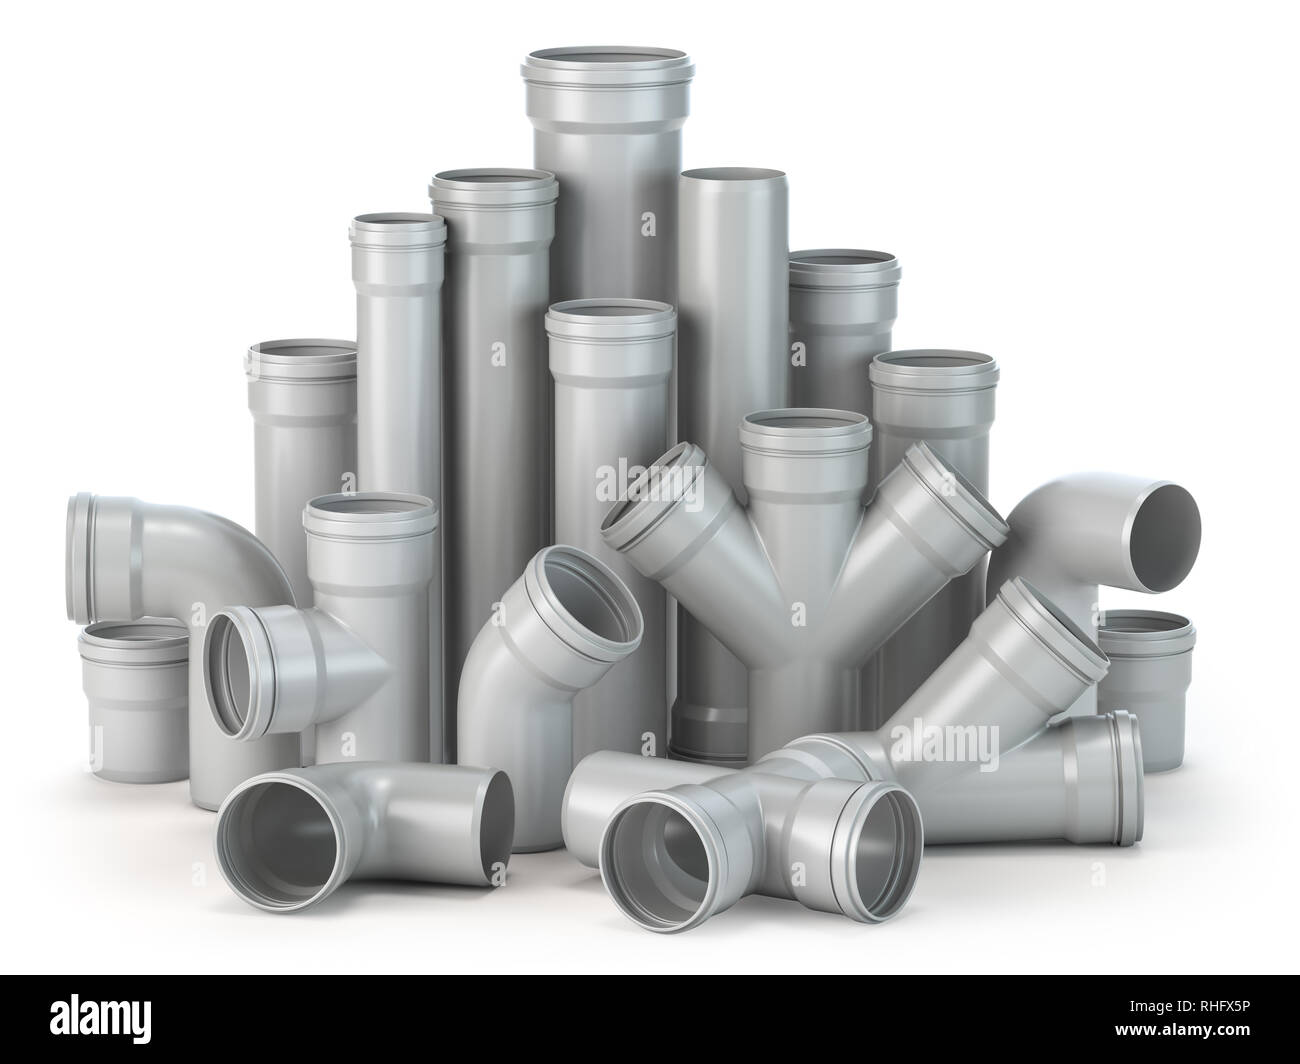 Kunststoff PVC-Rohre auf weißem Hintergrund. 3D-Darstellung Stockfotografie  - Alamy